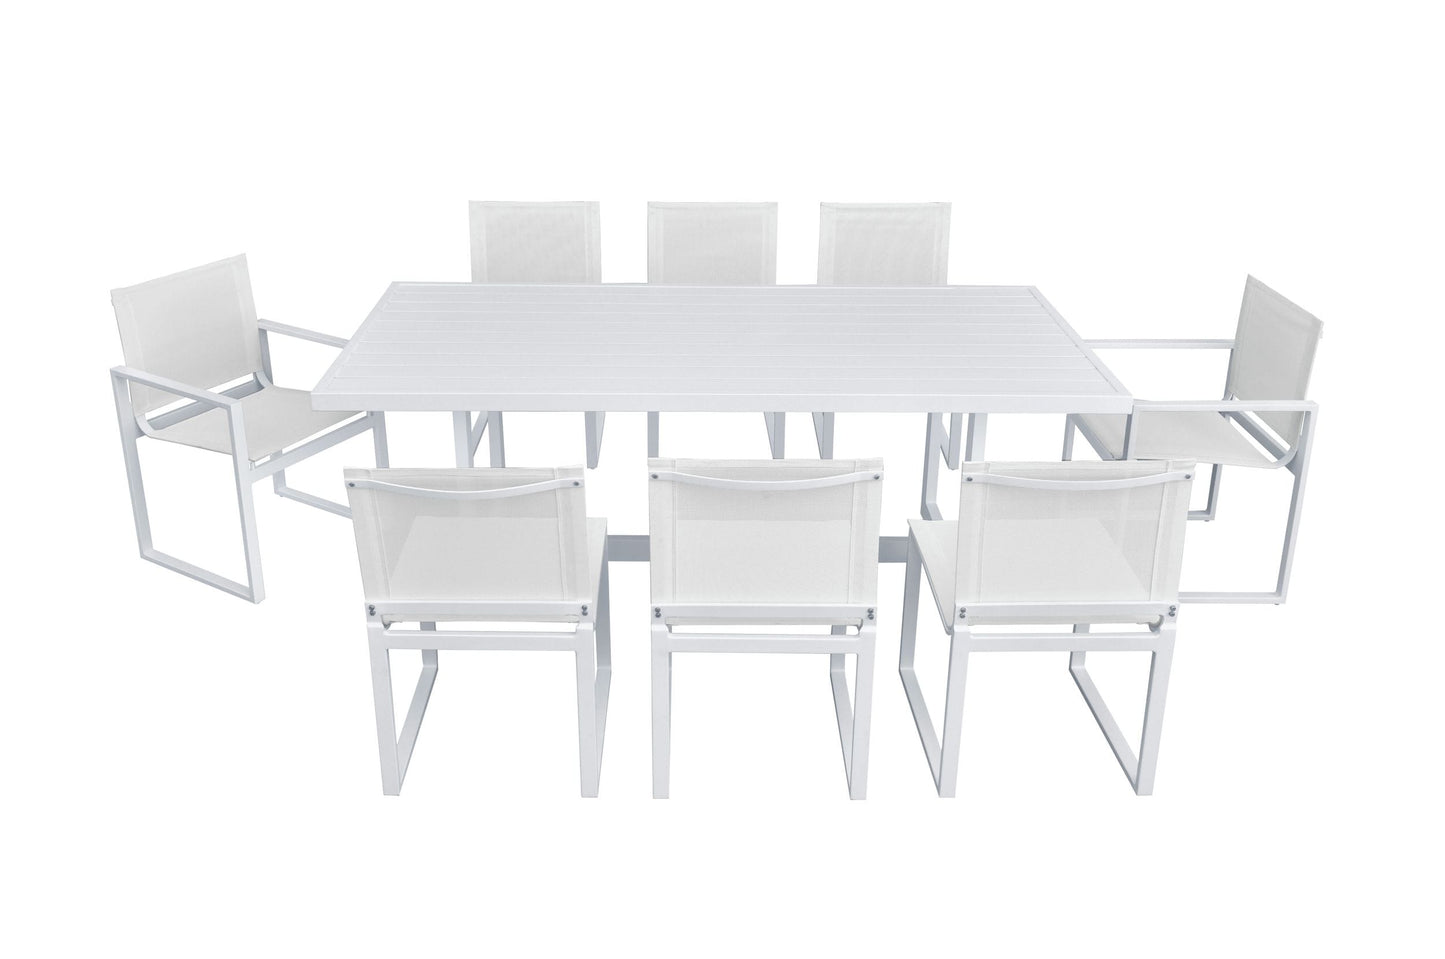 Renava Wake + Kayak - Modern Outdoor Off-White Dining Table Set